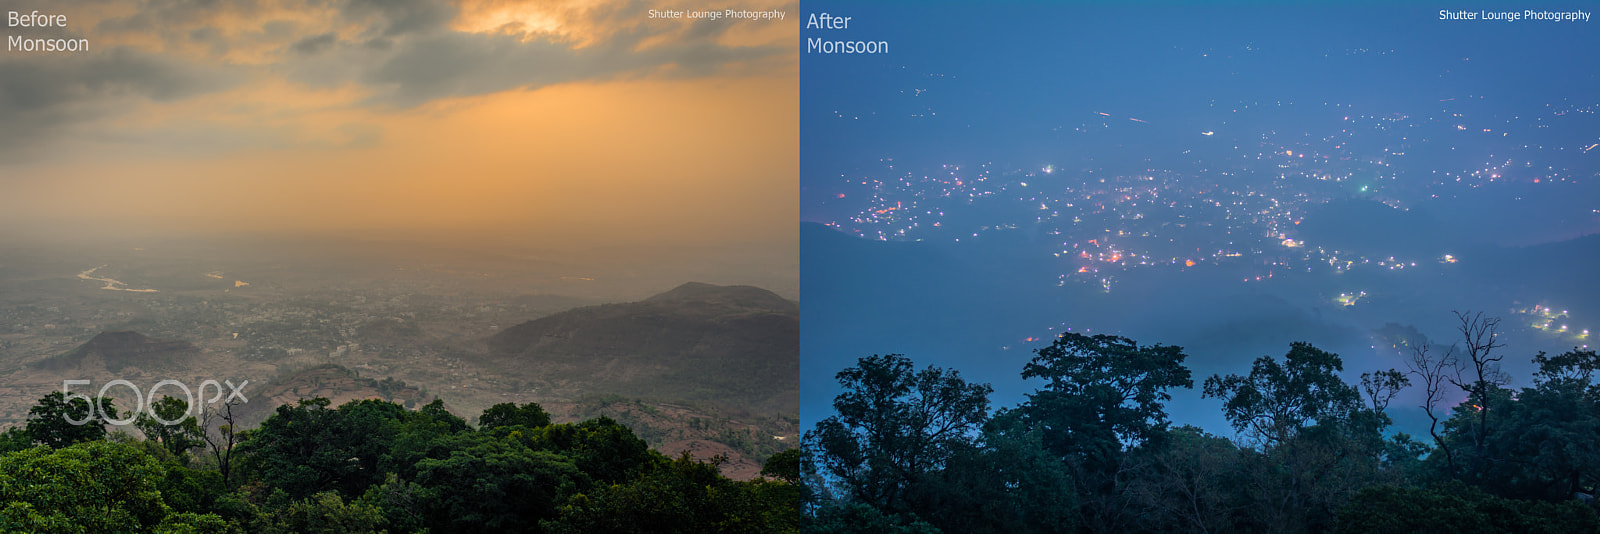 Nikon D750 + AF Zoom-Nikkor 35-70mm f/2.8D sample photo. Before & after monsoon photography